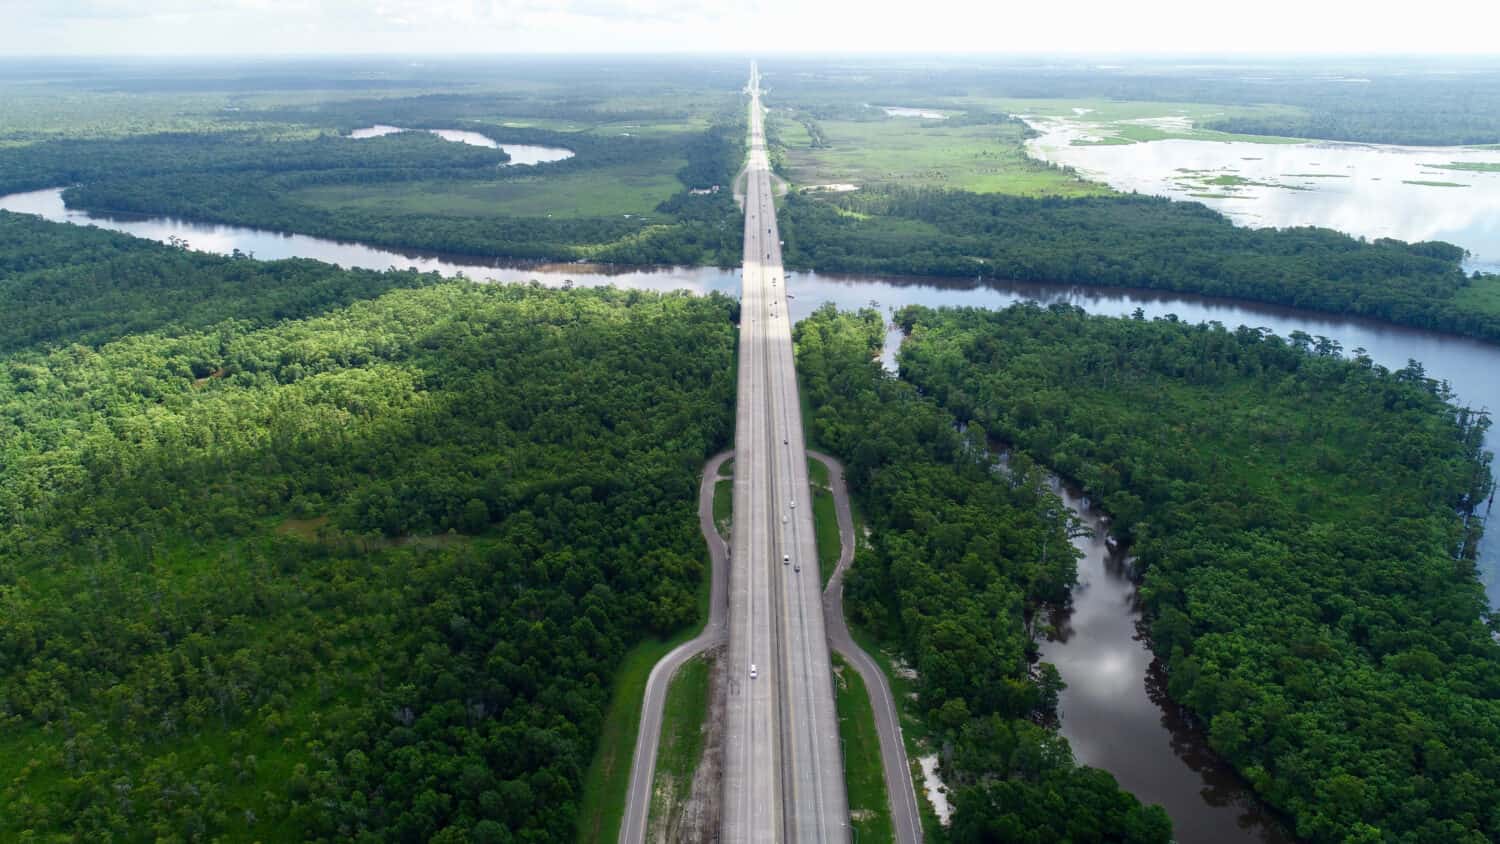 Autostrada trafficata circondata da alberi e dallo splendido fiume Sabine, sinuoso.  Questo fiume è al confine tra Texas e Louisiana.